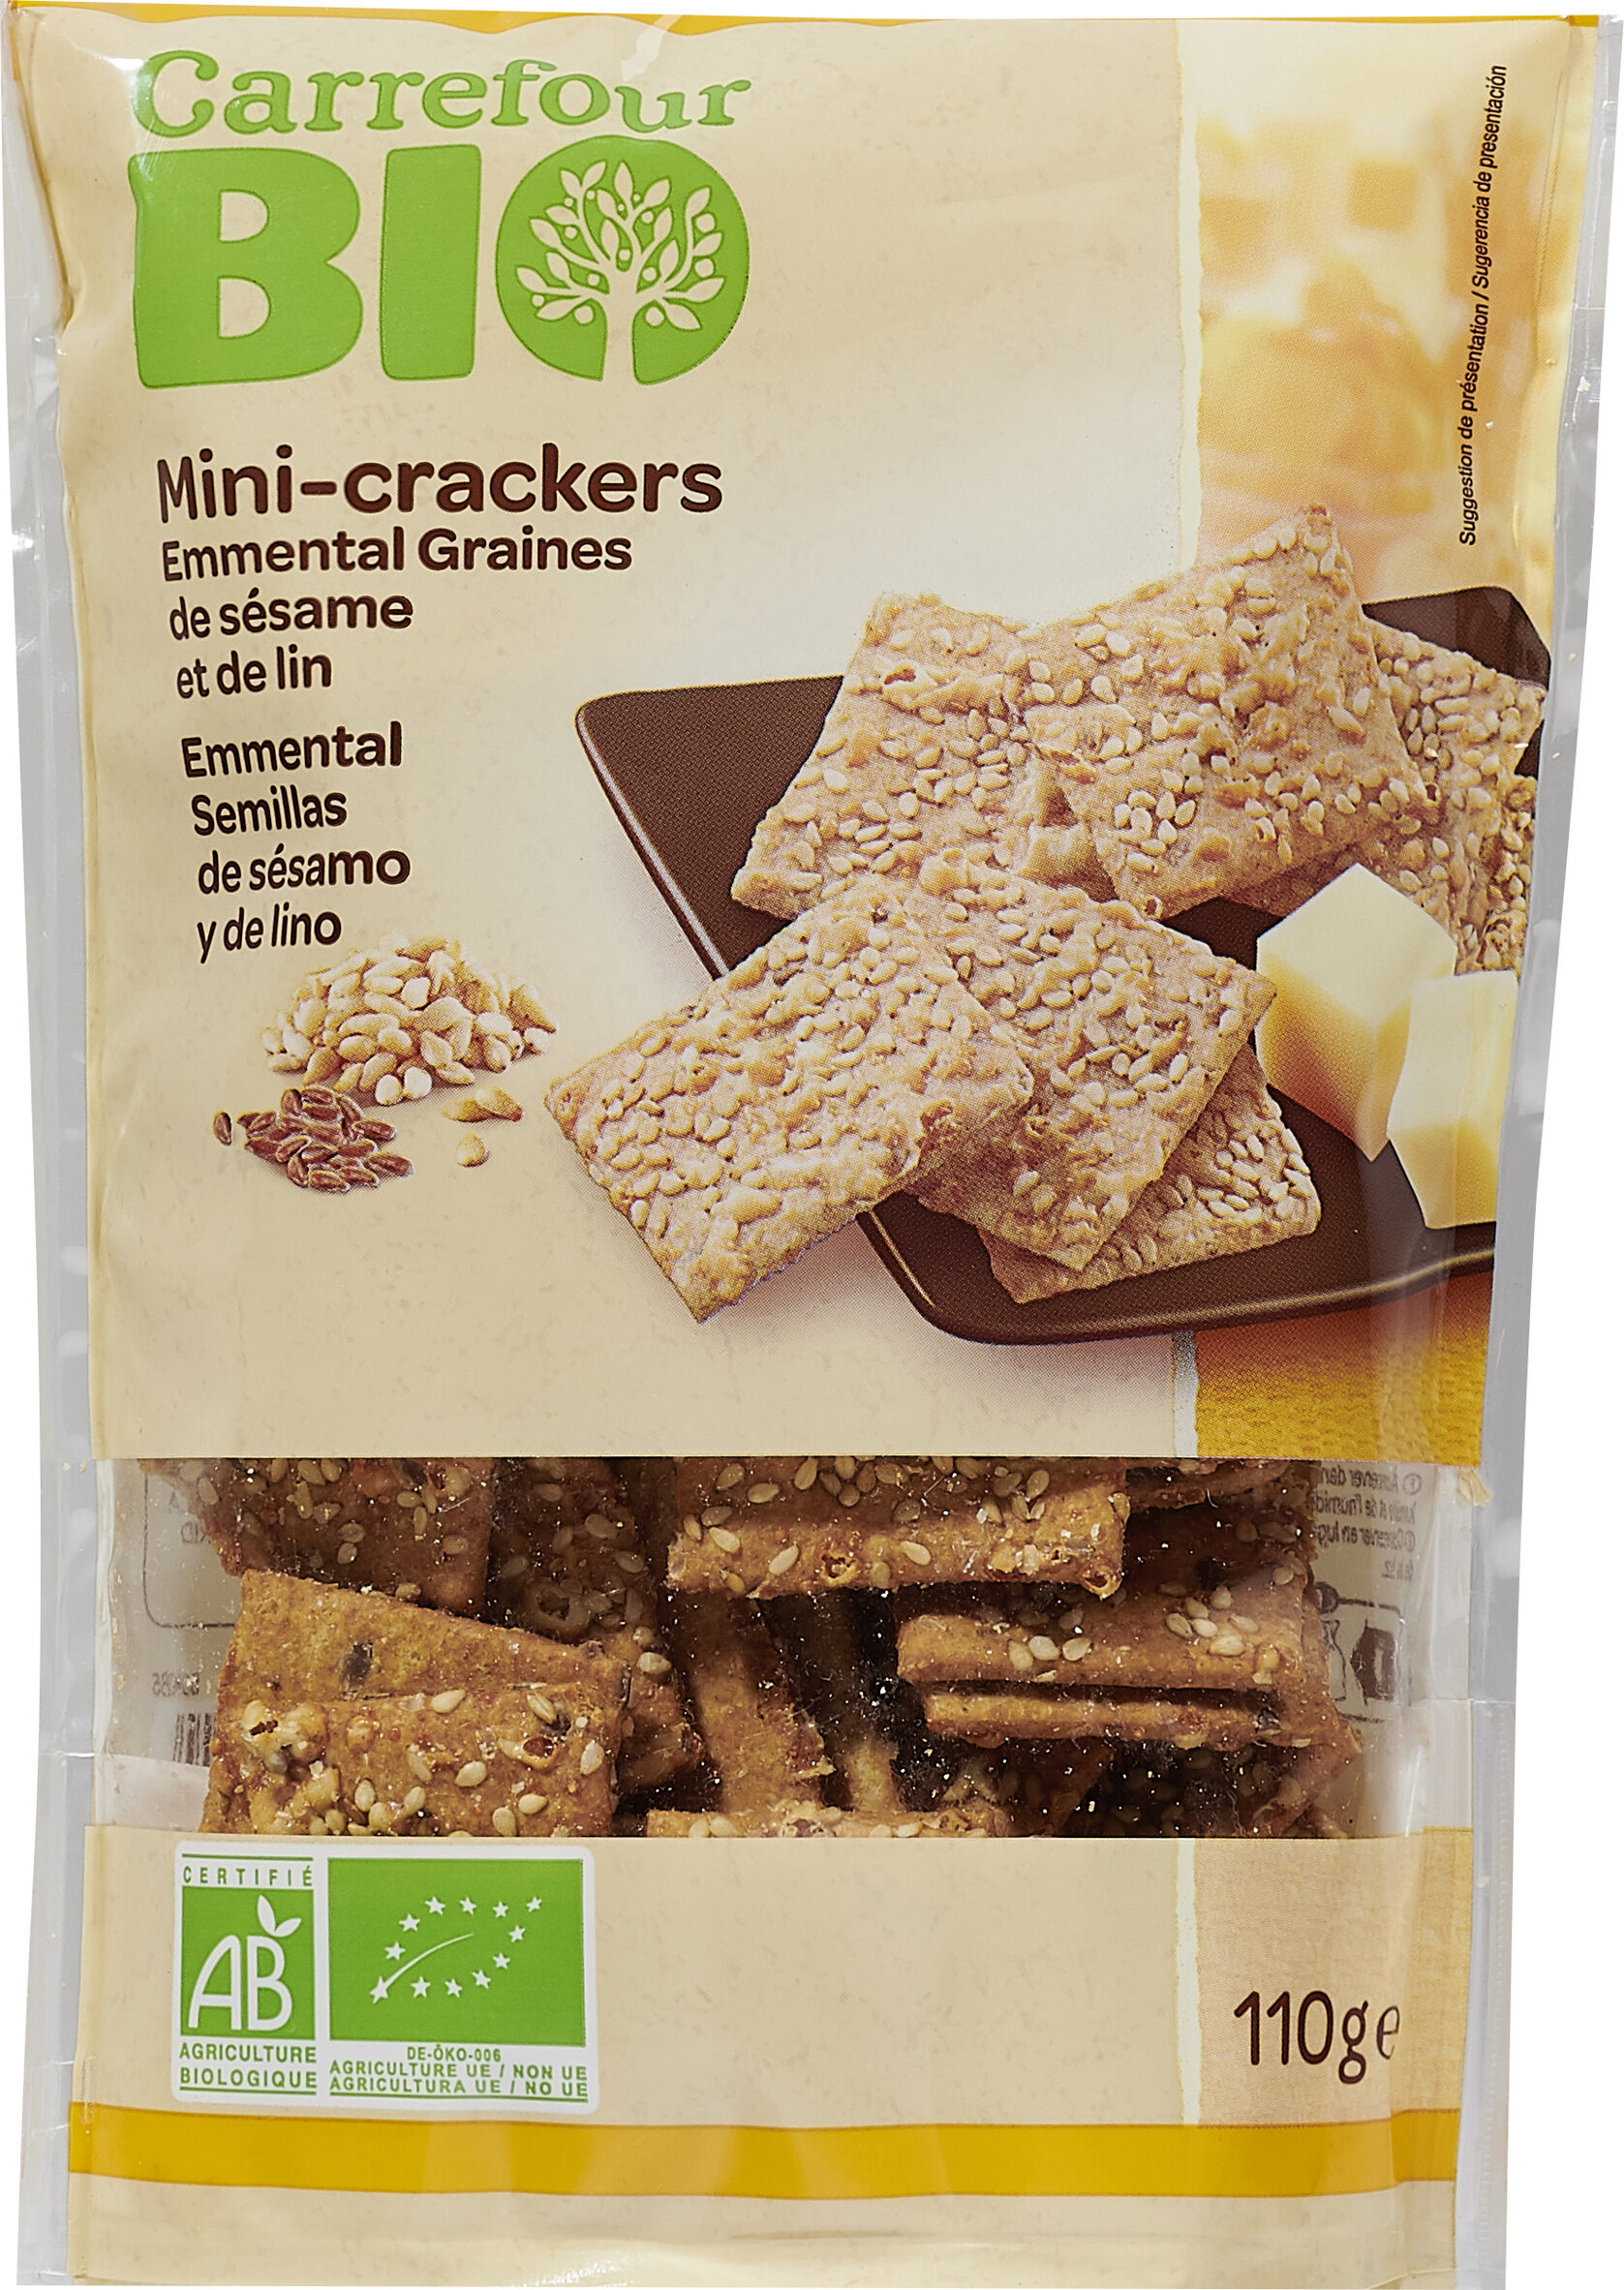 Mini-crackers Emmental Graines de sésame et de lin - Producte - fr